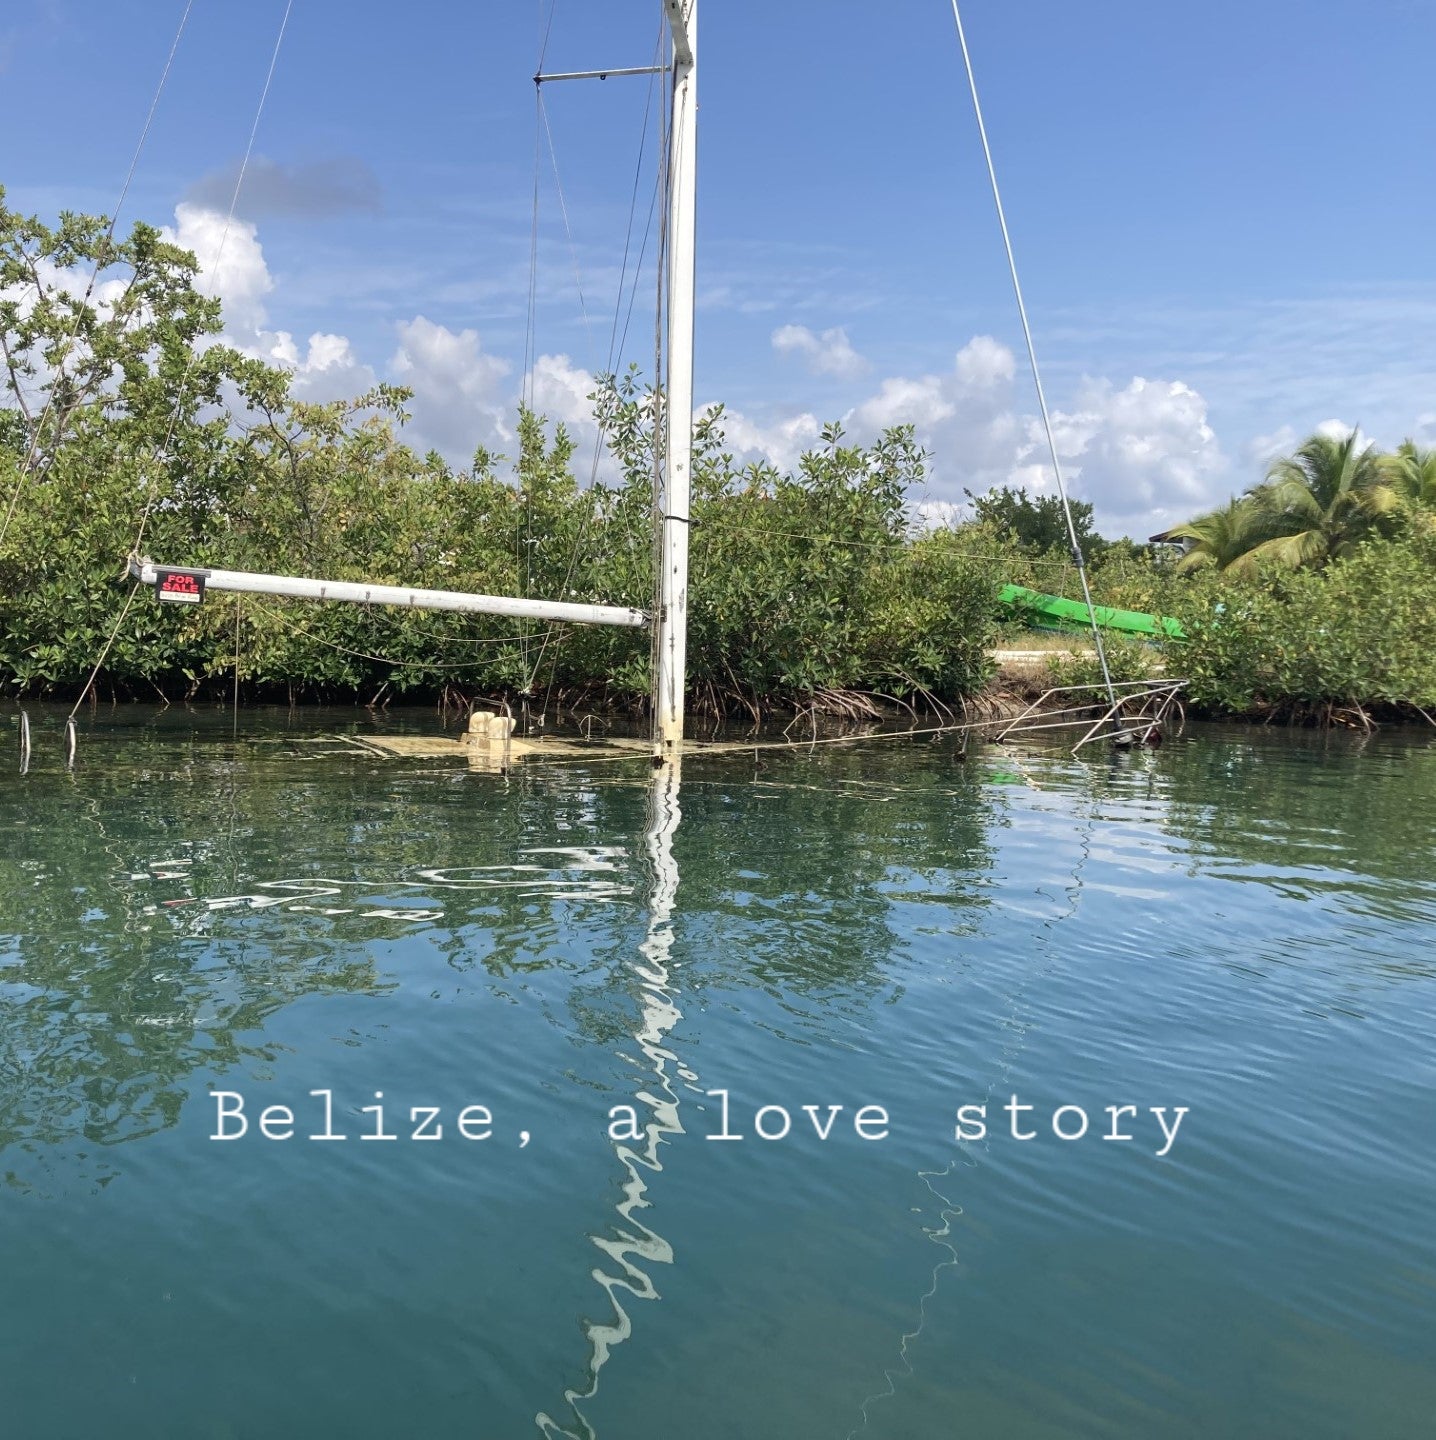 Belize: a love story